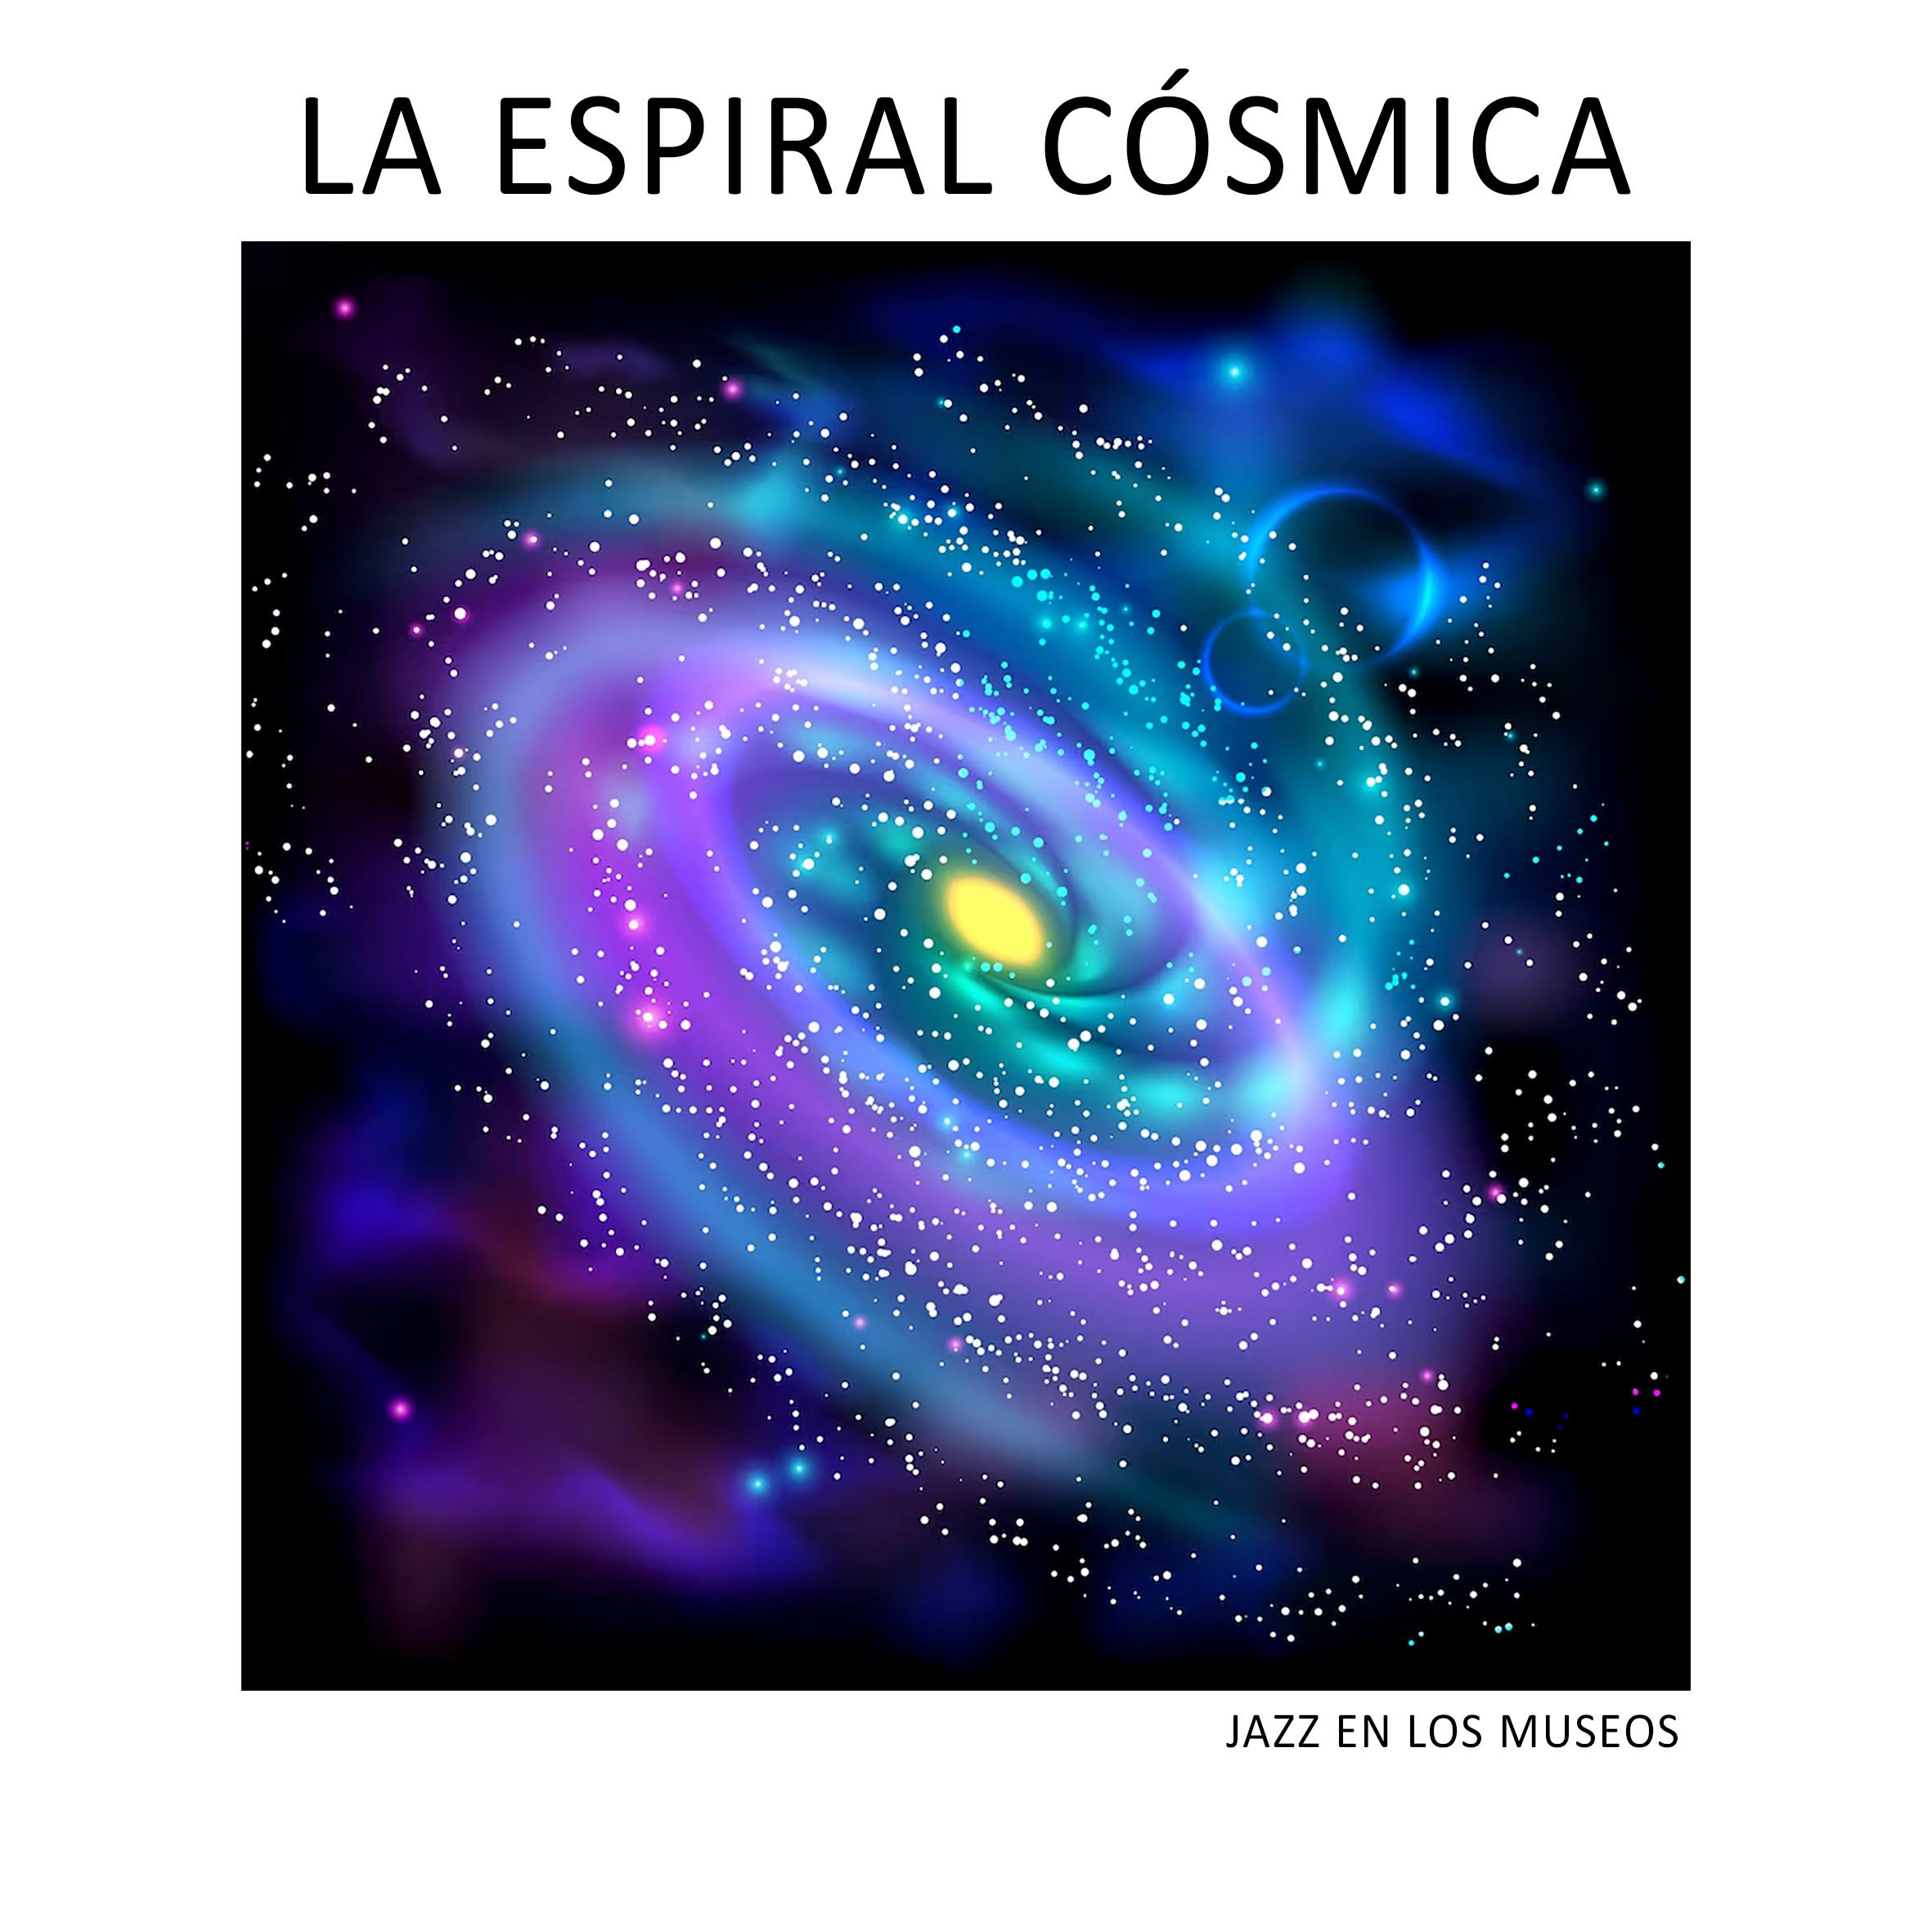 Cartel promocional de la banda de jazz 'La espiral cósmica' para el proyecto 'Jazz en los museos'.